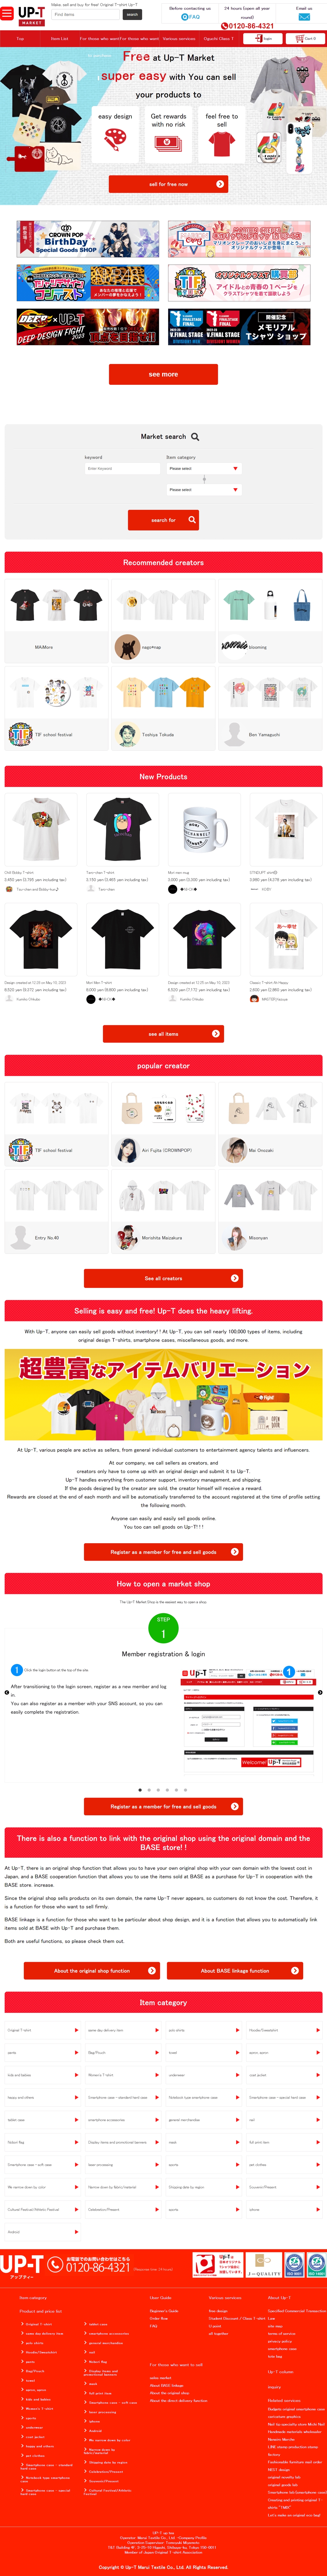 自分でデザインして販売したいユーザーのためのTシャツプラットフォーム